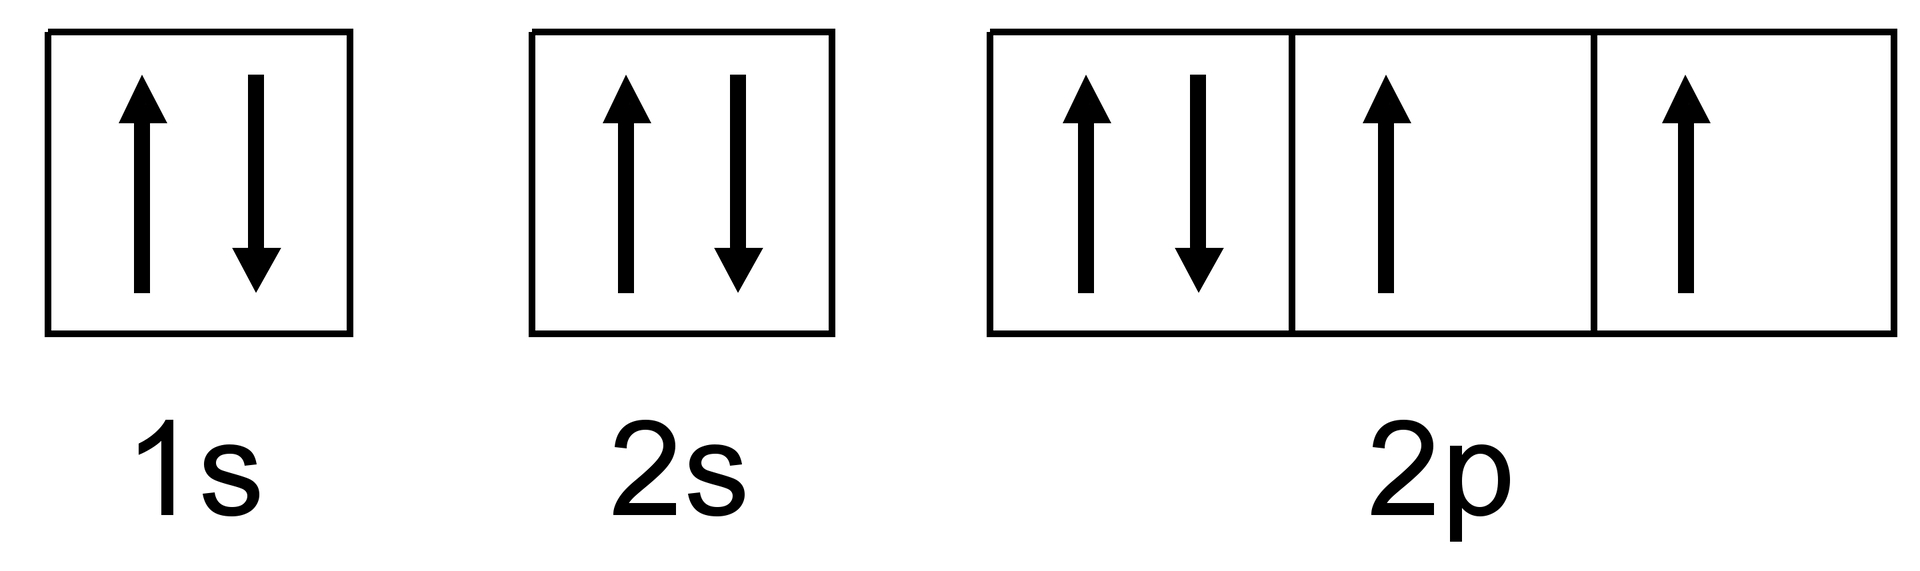 Na ilustracji znajduje się zapis klatkowy dla atomu tlenu o liczbie atomowej 8. W pierwszym kwadracie podpisanym jako 1s znajdują się dwie równoległe strzałki o grotach skierowanych przeciwnie, drugi kwadrat podpisany jest 2s i znajdują się w nim dwie równoległe strzałki o grotach skierowanych przeciwnie. Dalej znajduje się prostokąt podzielony na trzy kwadraty podpisany jako 2p. W pierwszym kwadracie znajdują się dwie równoległe strzałki o grotach skierowanych przeciwnie, w drugim i trzecim kwadracie znajduje się po jednej strzałce skierowanej w górę.